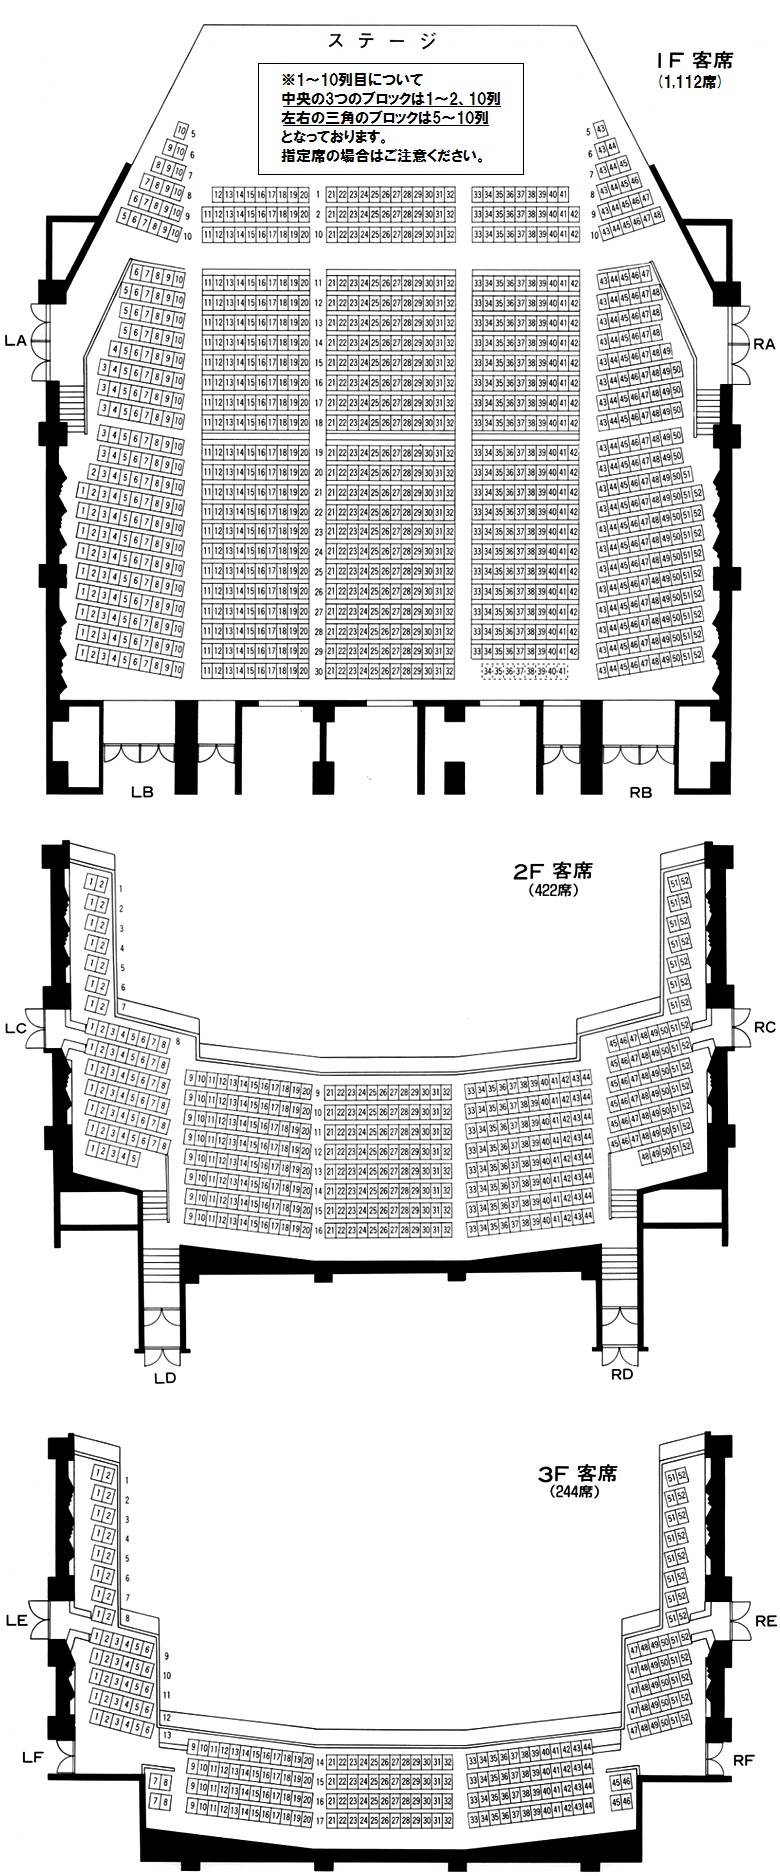 メインホールの座席表・ワンルーム型オーケストラピット